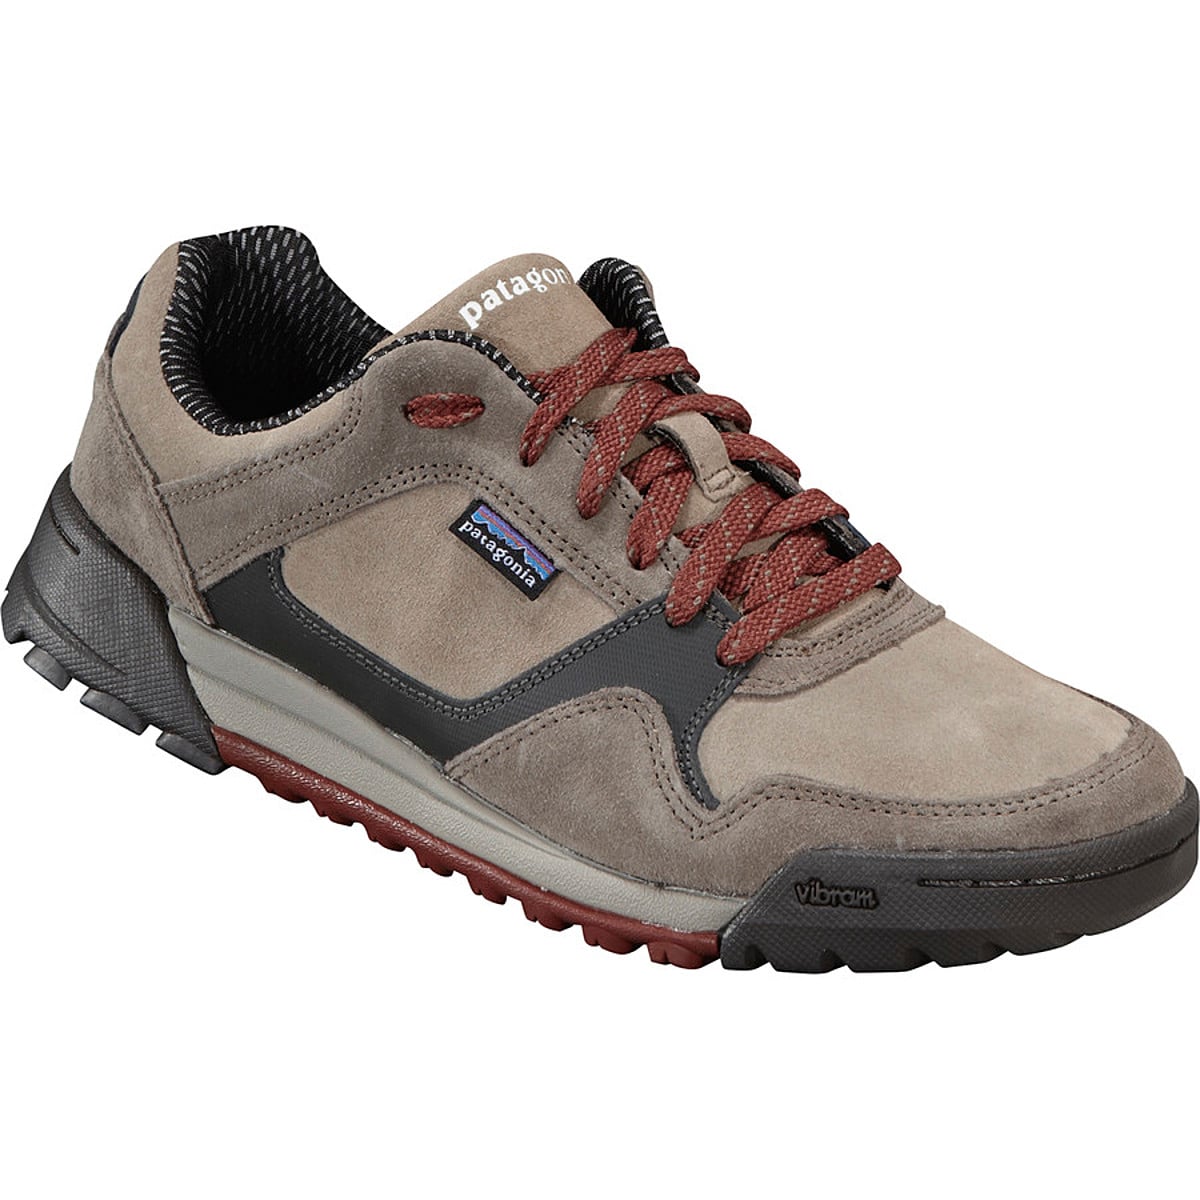 Patagonia Footwear Evader Shoe - Men's Footwear